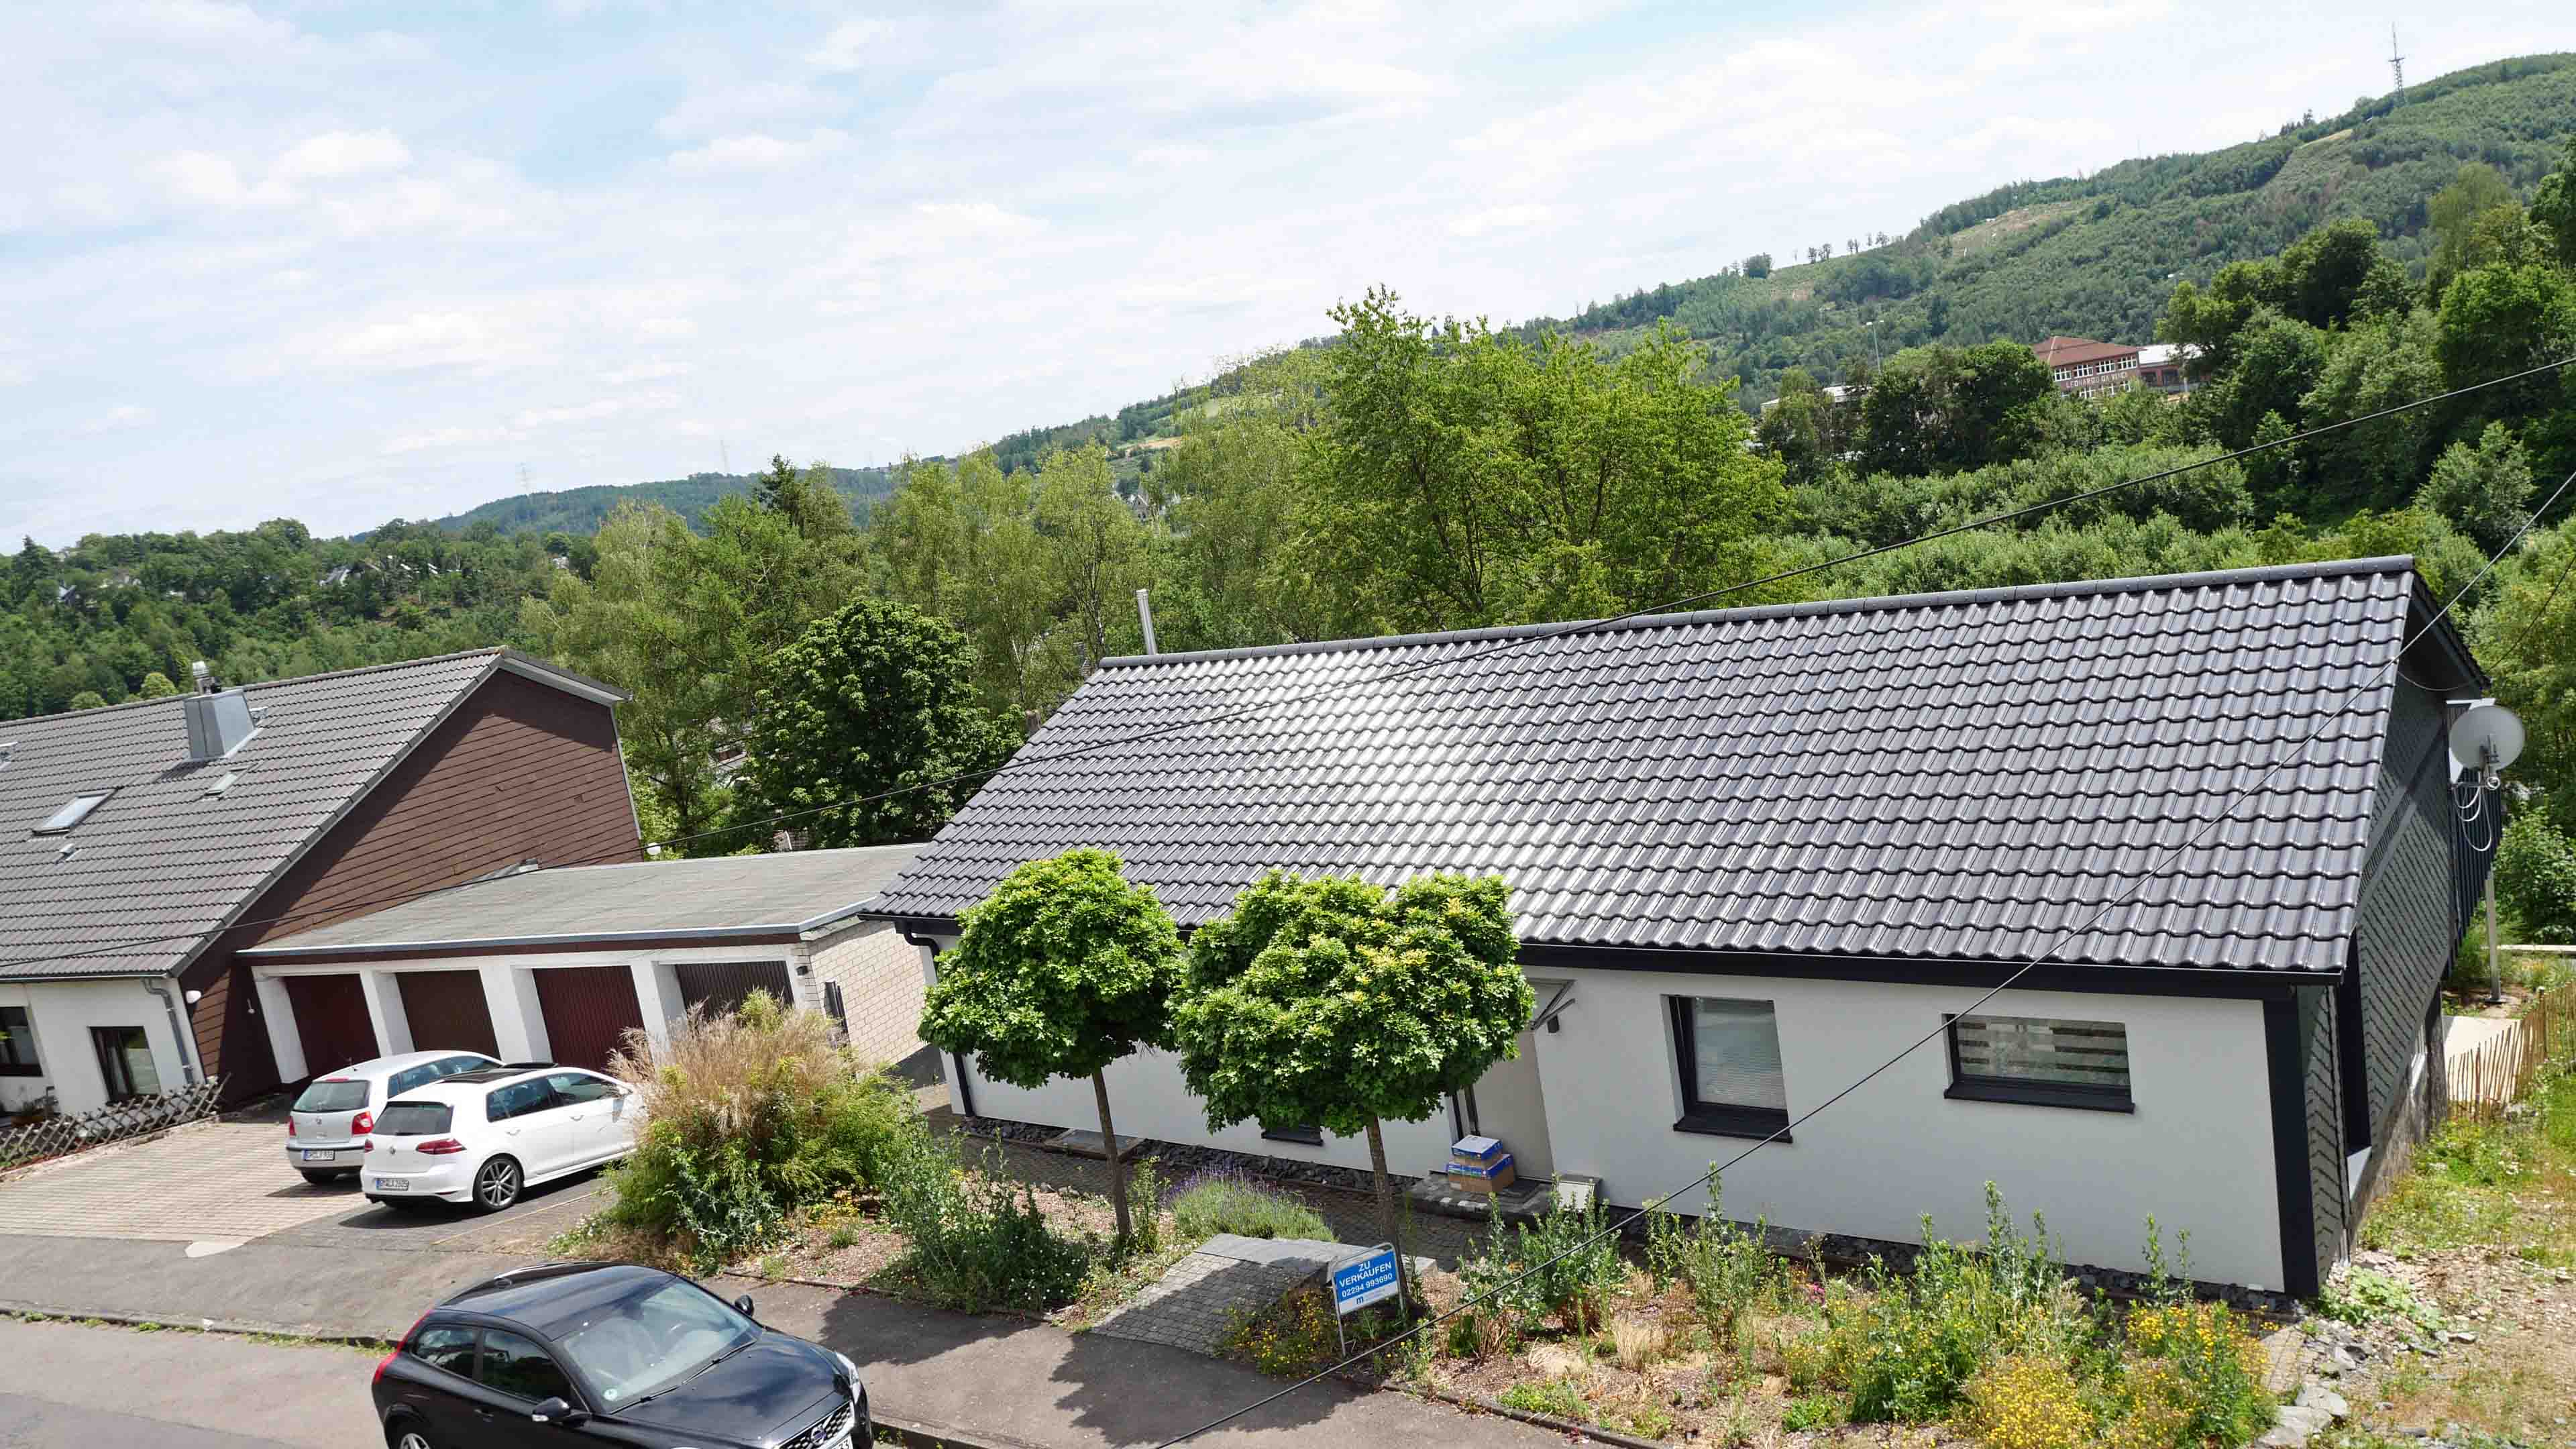 Morsbach: Topsanierter Bungalow mit Garage und herrlicher Terrasse, ruhige Lage in einer Wohn-/ Anliegerstraße